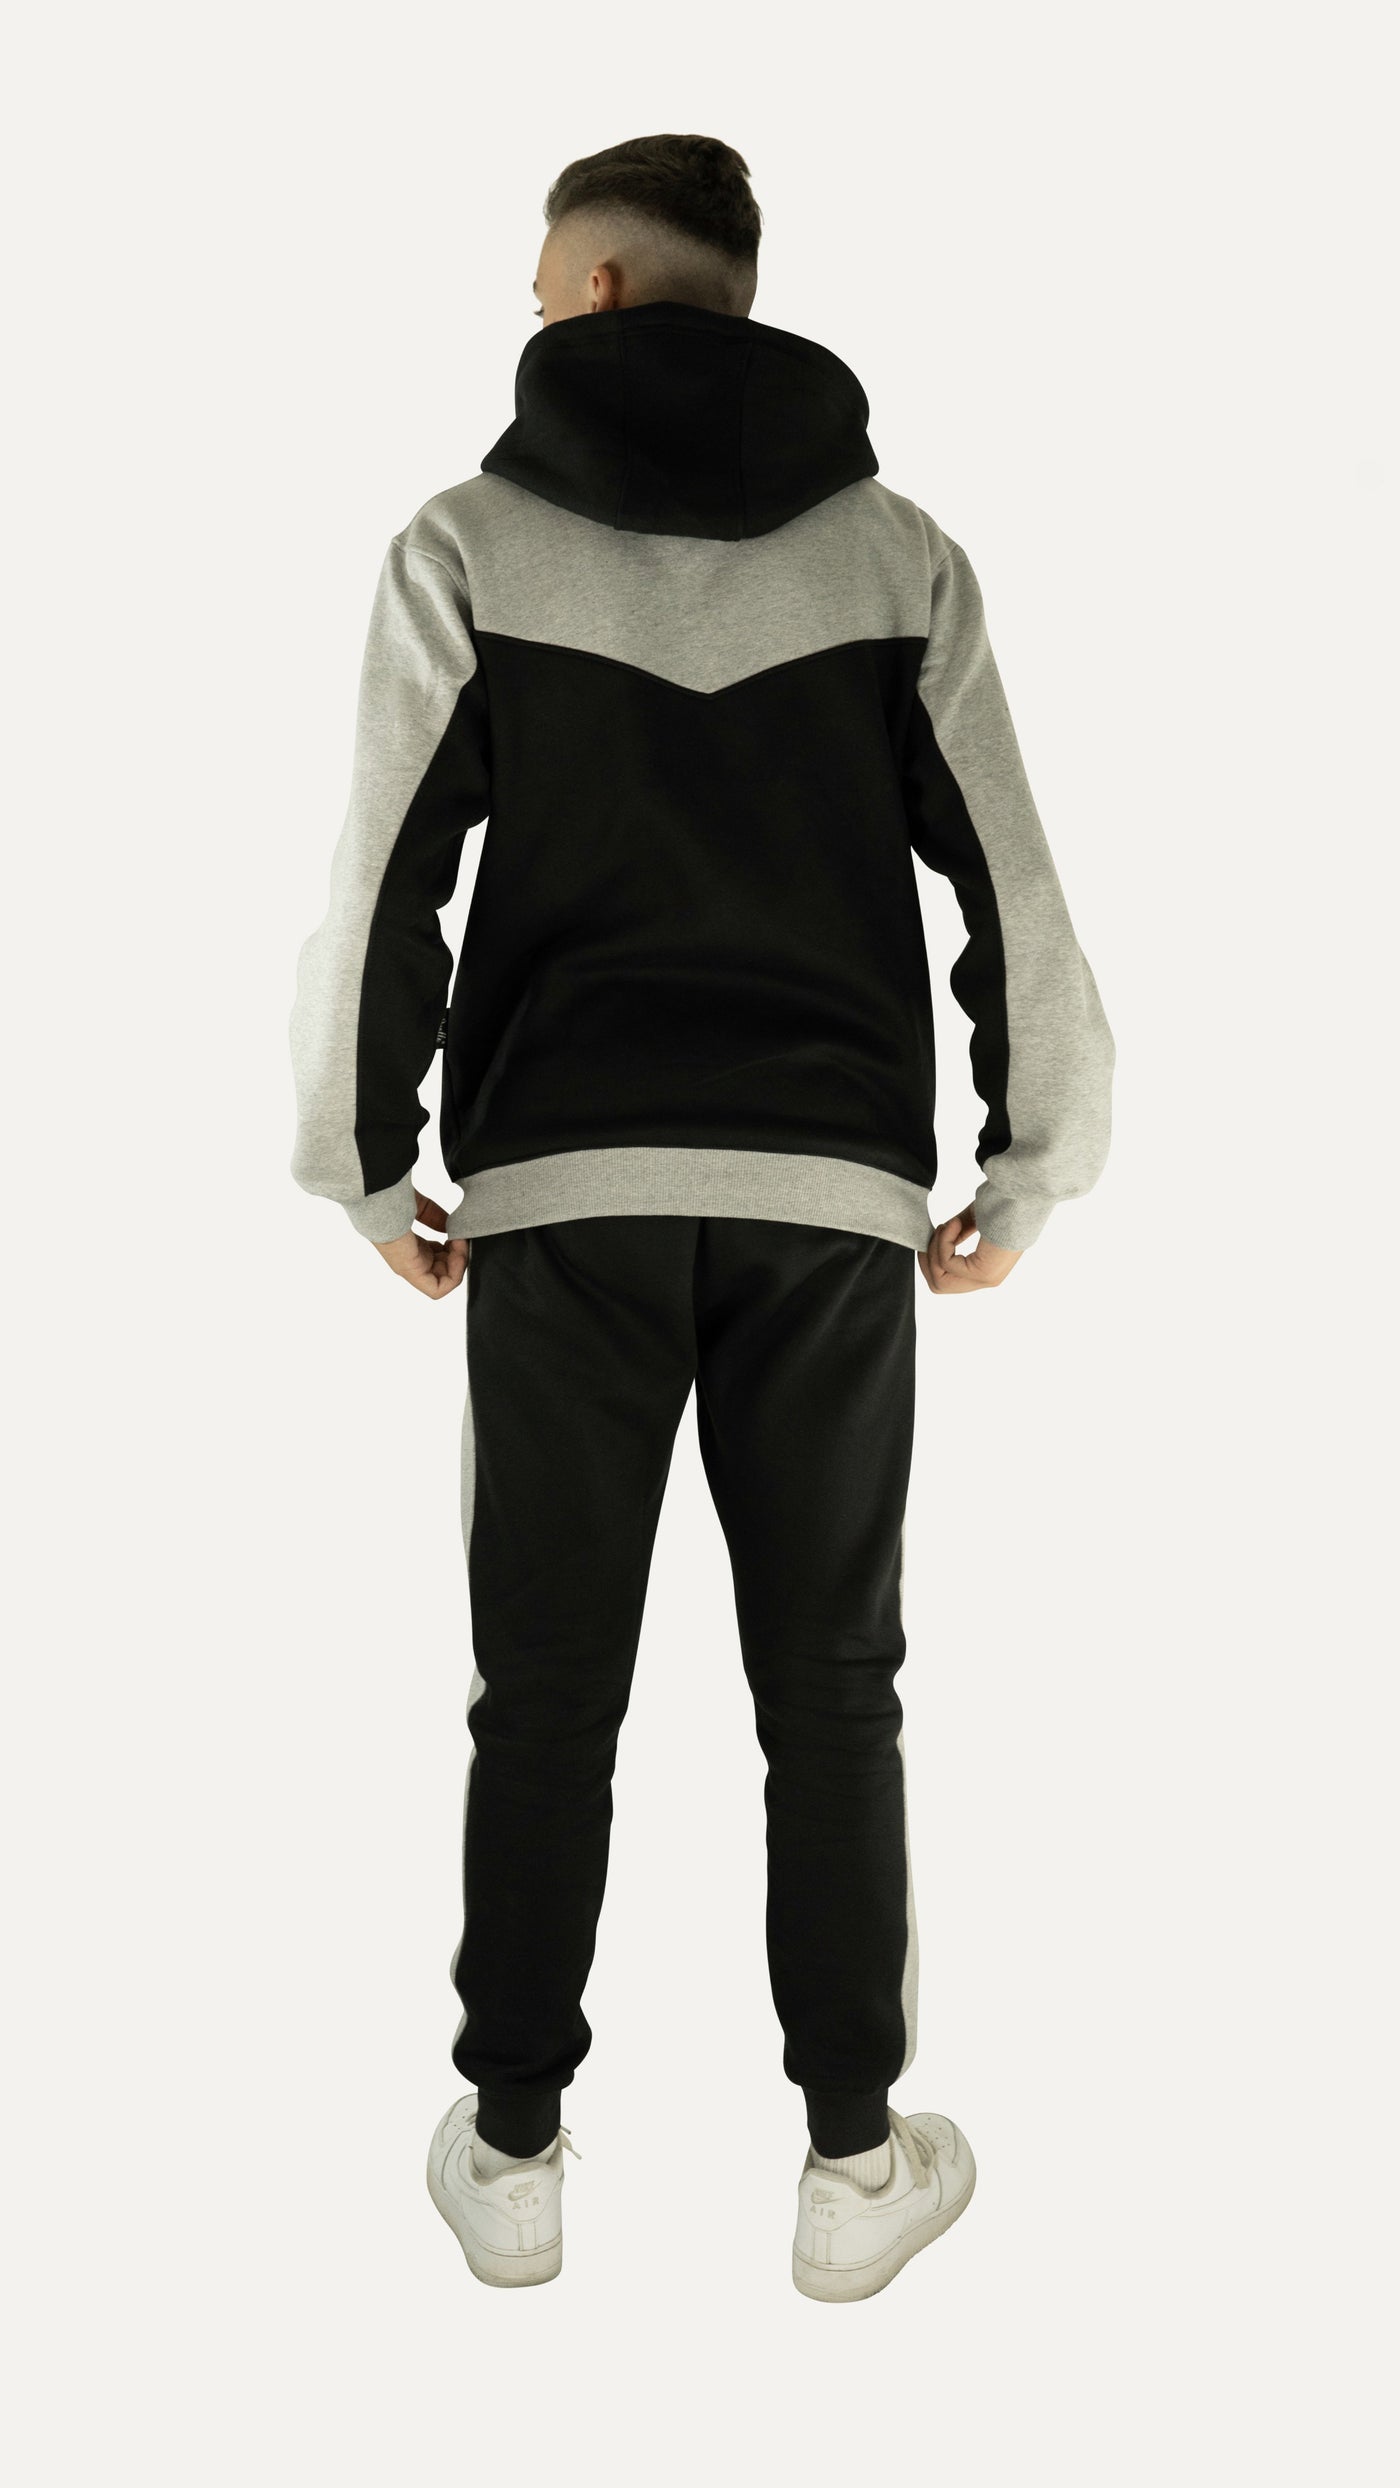 FuPer Jogginganzug "Streetwear Respekt" unisex (Kinder, Frauen und Herren) - grau schwarz